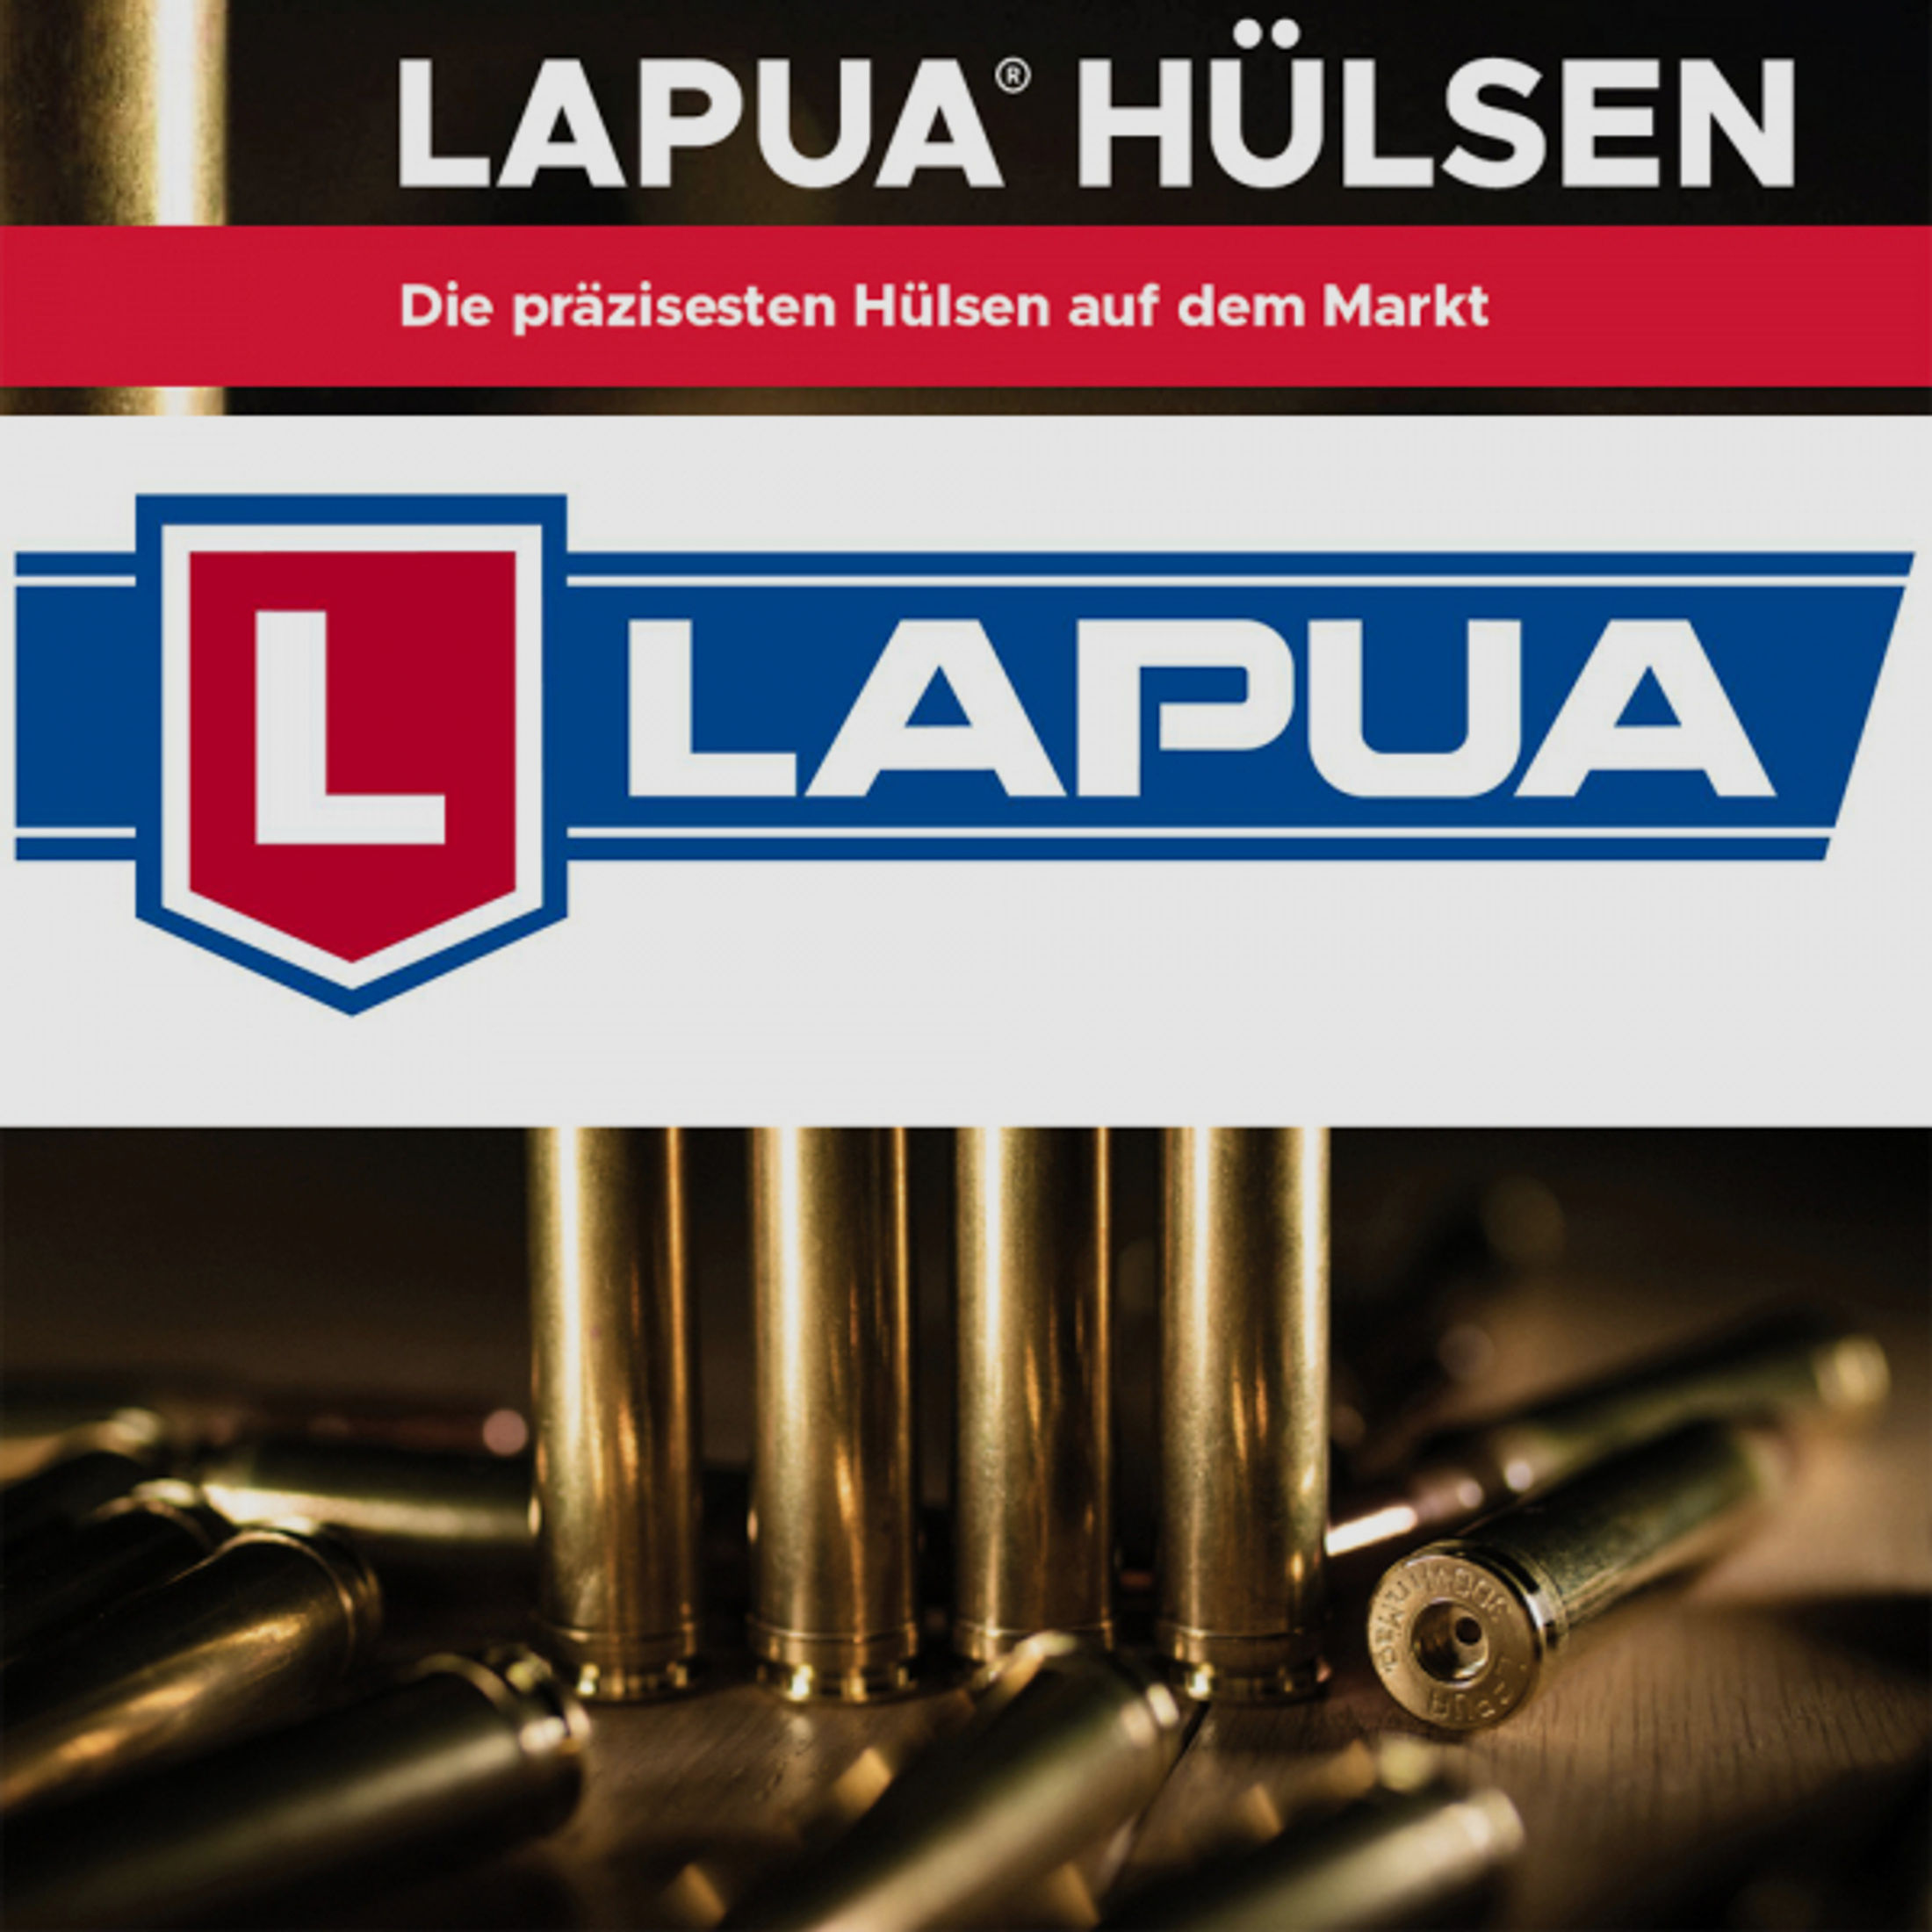 100 Stück NEUE LAPUA CASES | Wiederlade Hülsen | 7x65R - 7 x 65 R | .284 / 7MM - NEU BOXER #4PH7107